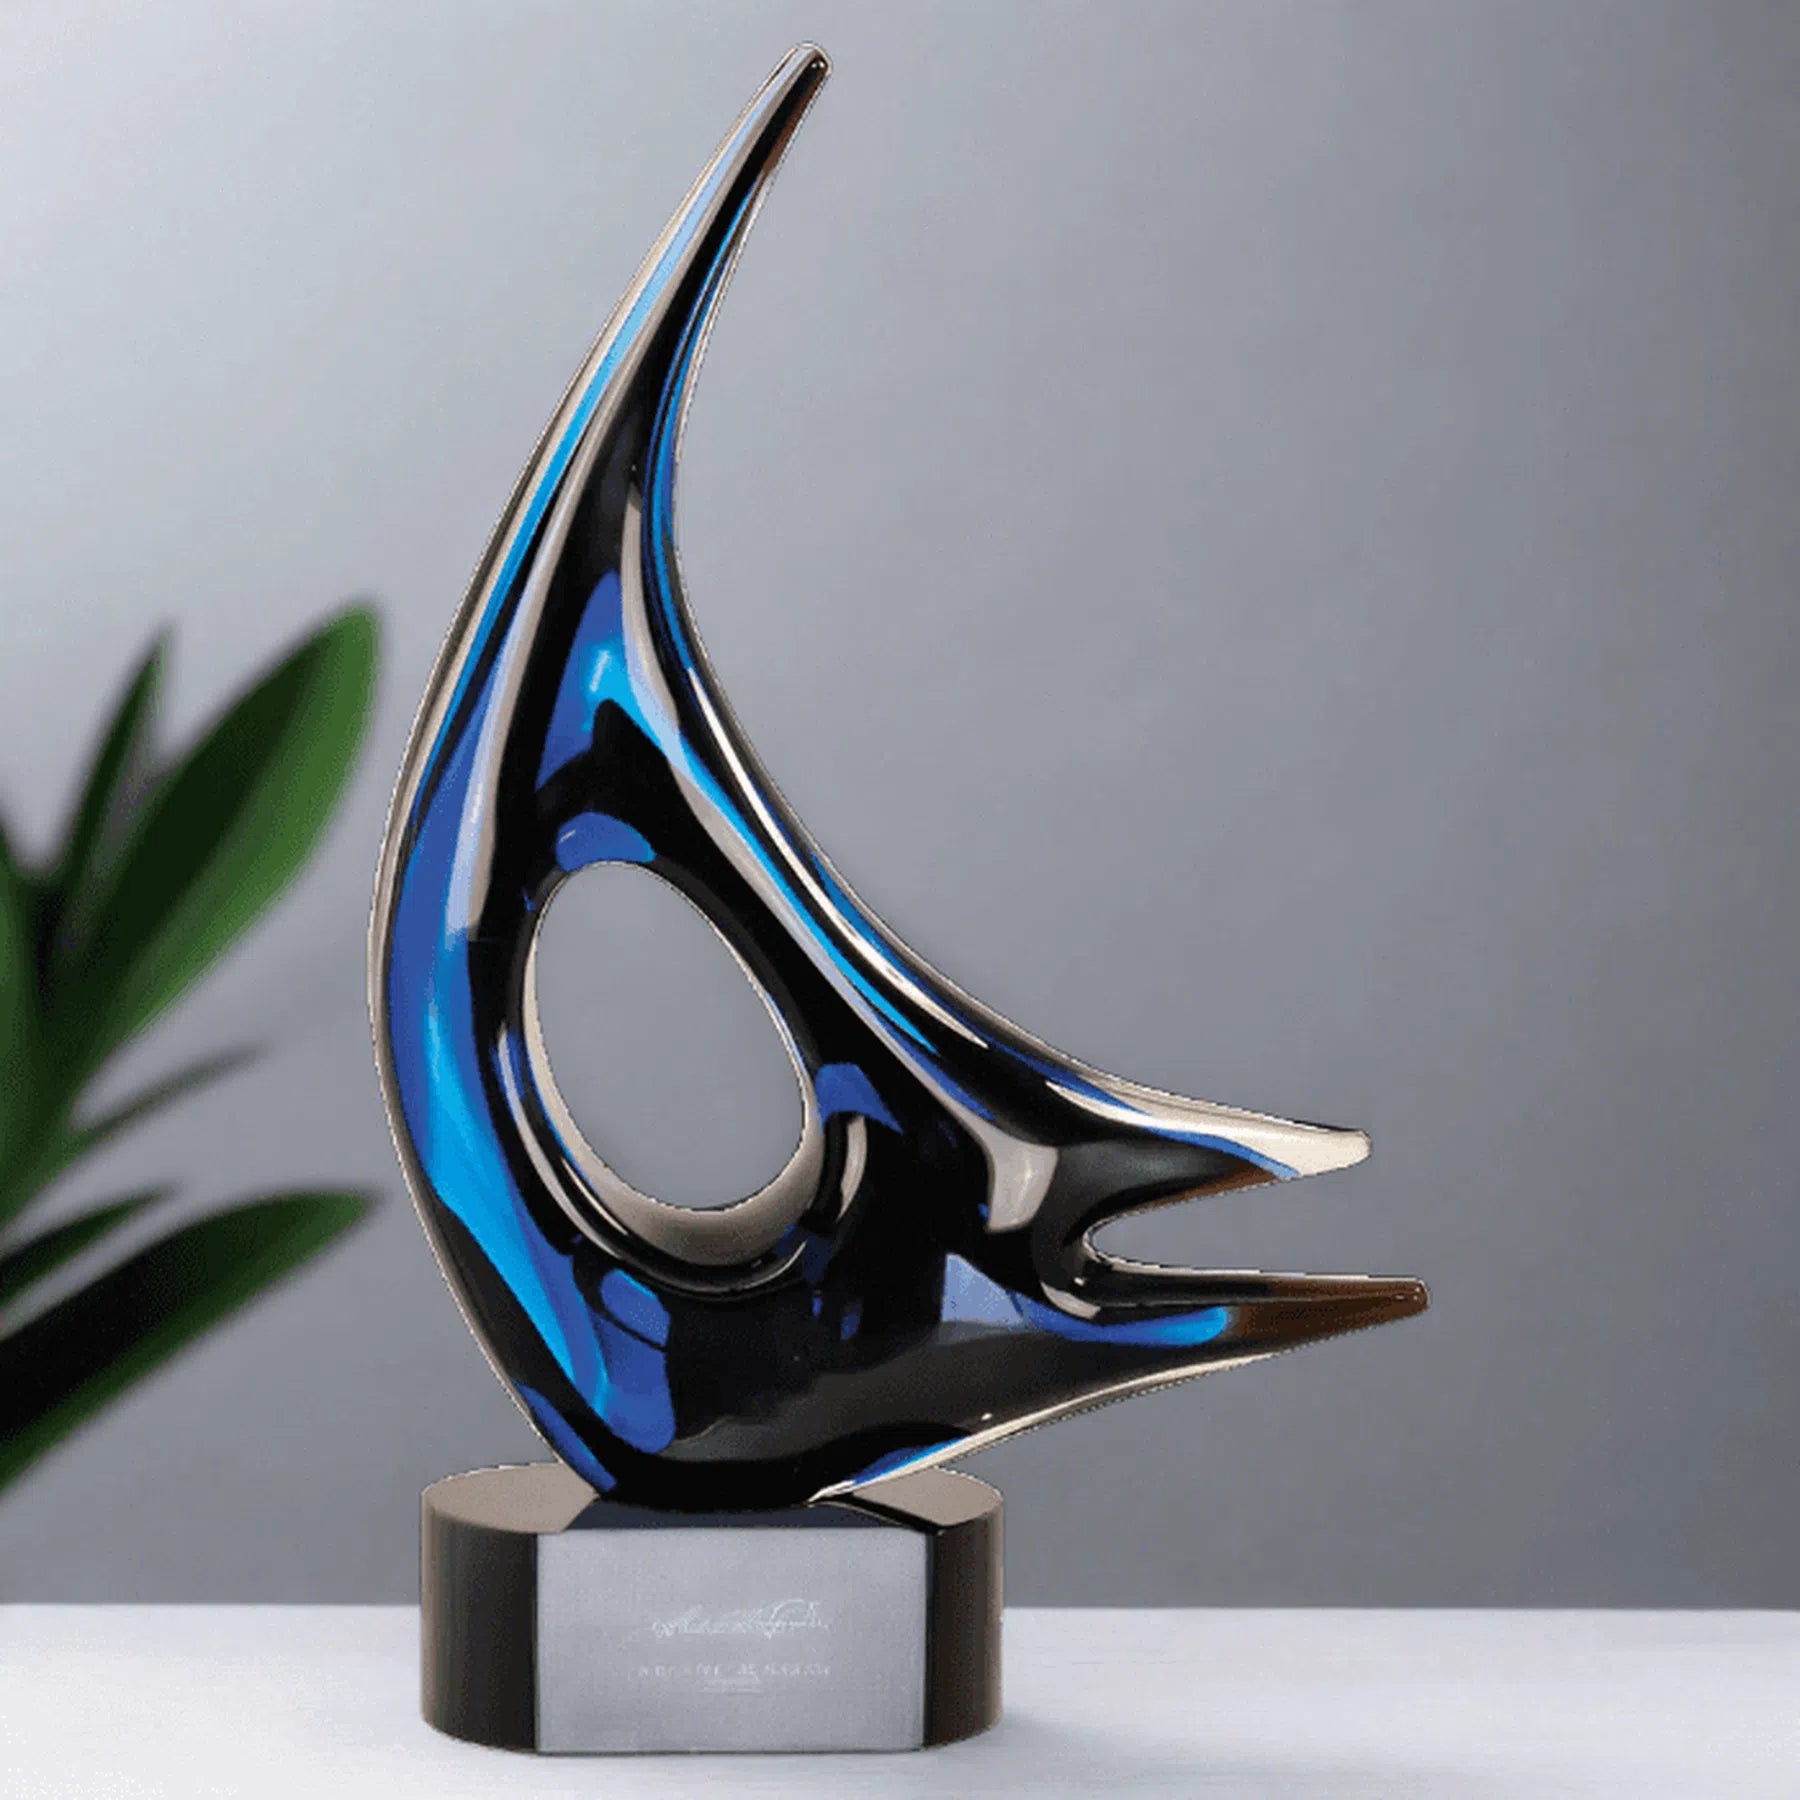 14 1/4" Blue Sail Art Glass Award Sculpture